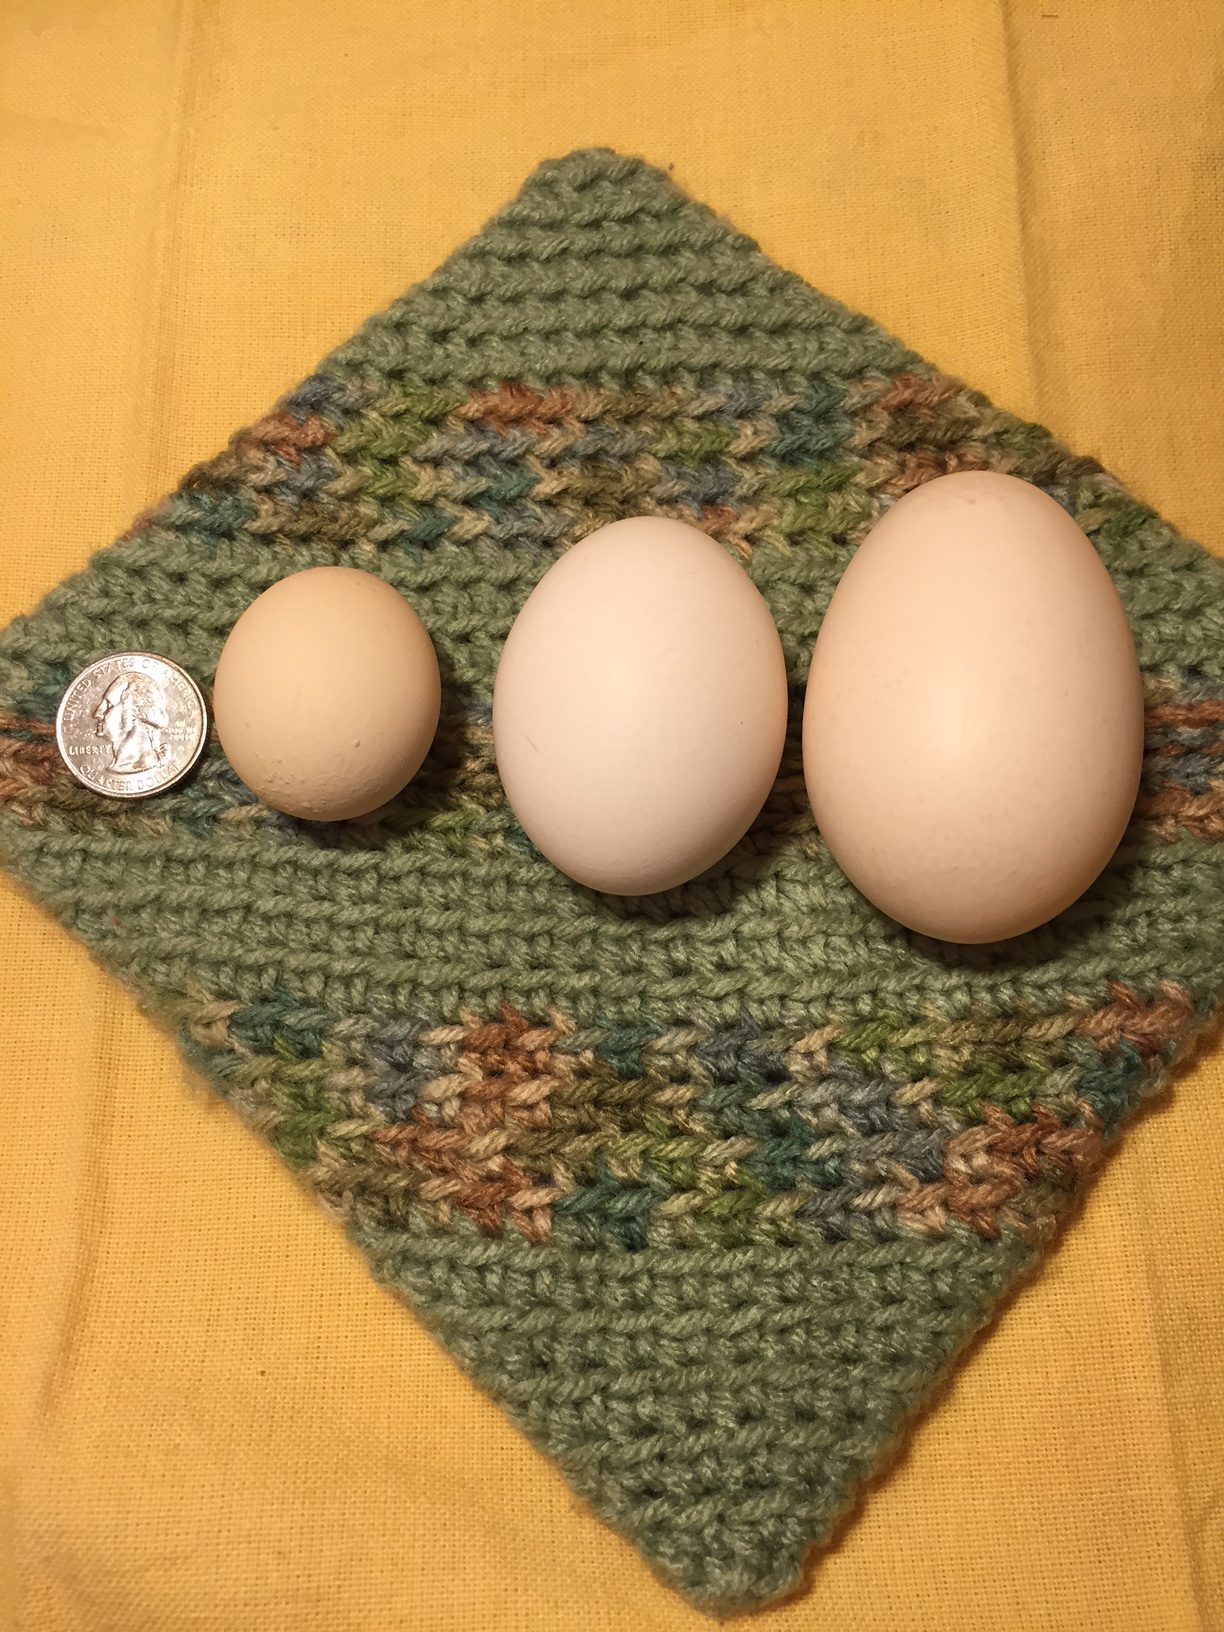 Fairy egg, standard egg, double yolked egg